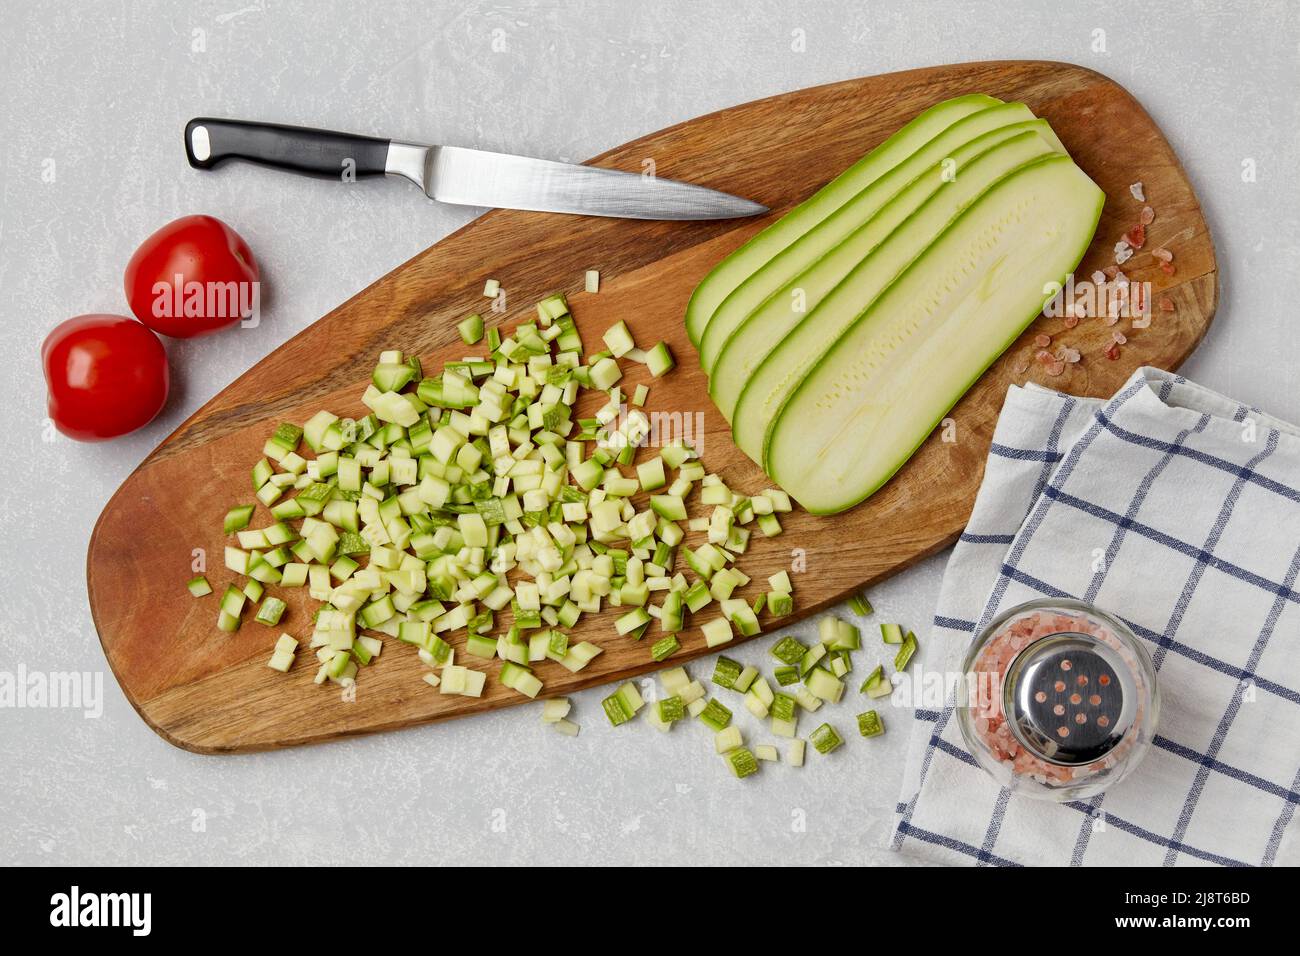 Affettare le zucchine di zucchine su un tagliere di legno, coltello, pomodori, sale rosa e tovagliolo su una tavola leggera in cemento. Vista dall'alto piatto lat Foto Stock